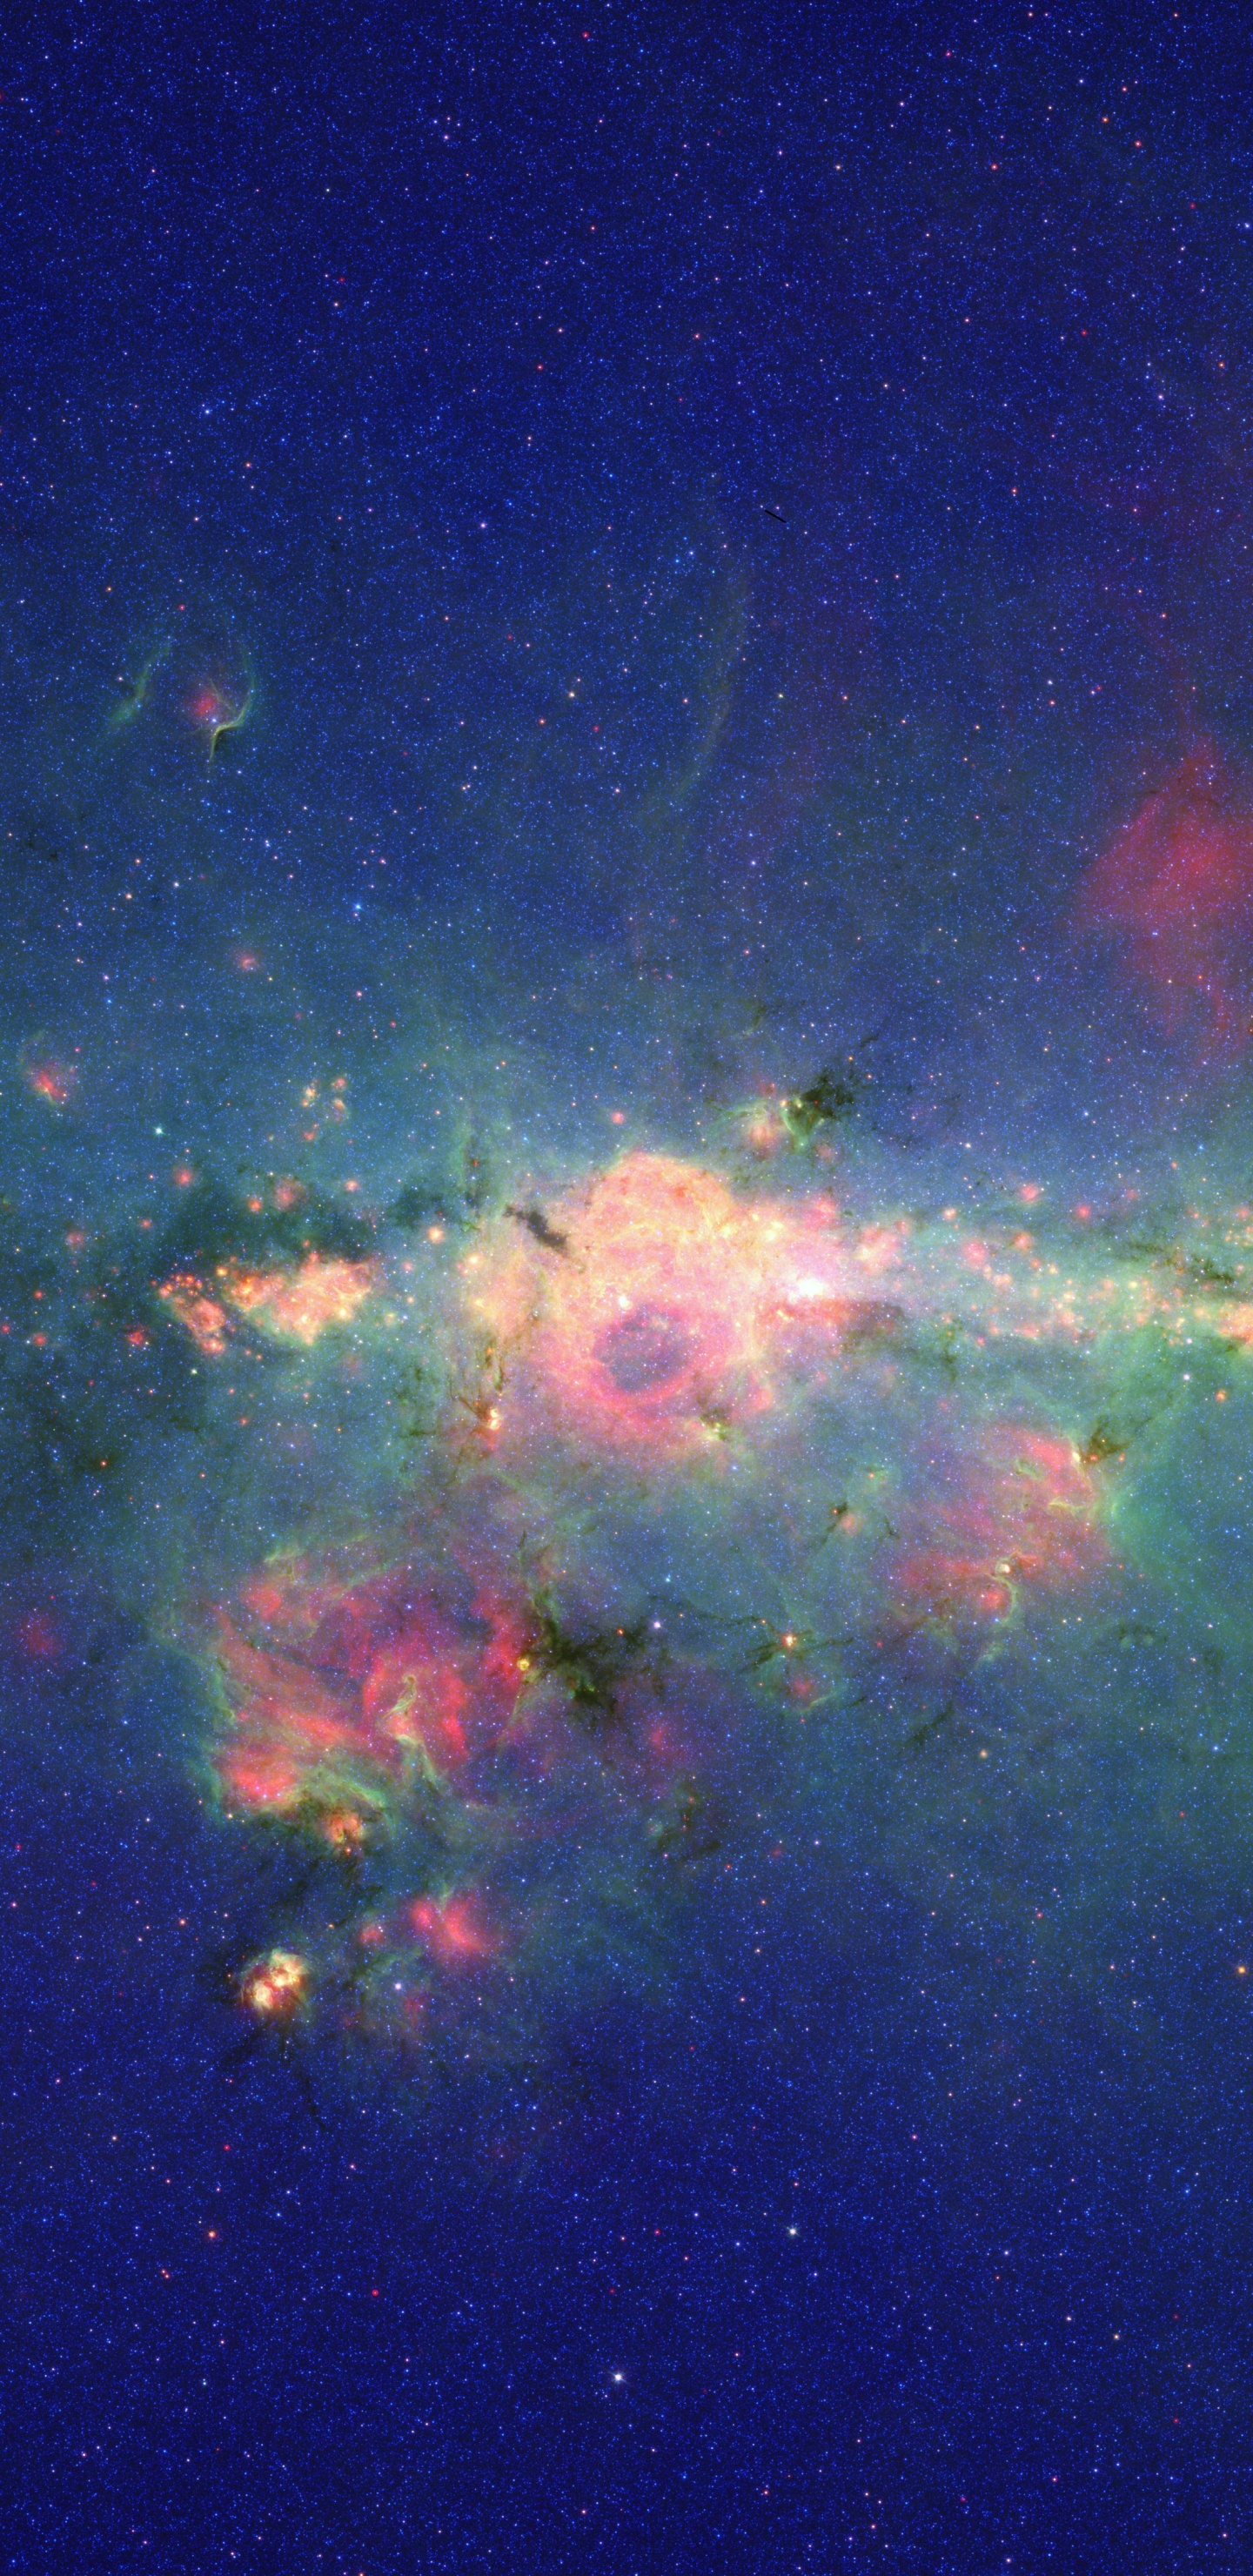 银河系, 斯皮策太空望远镜, 明星, 气氛, 天文学对象 壁纸 1440x2960 允许